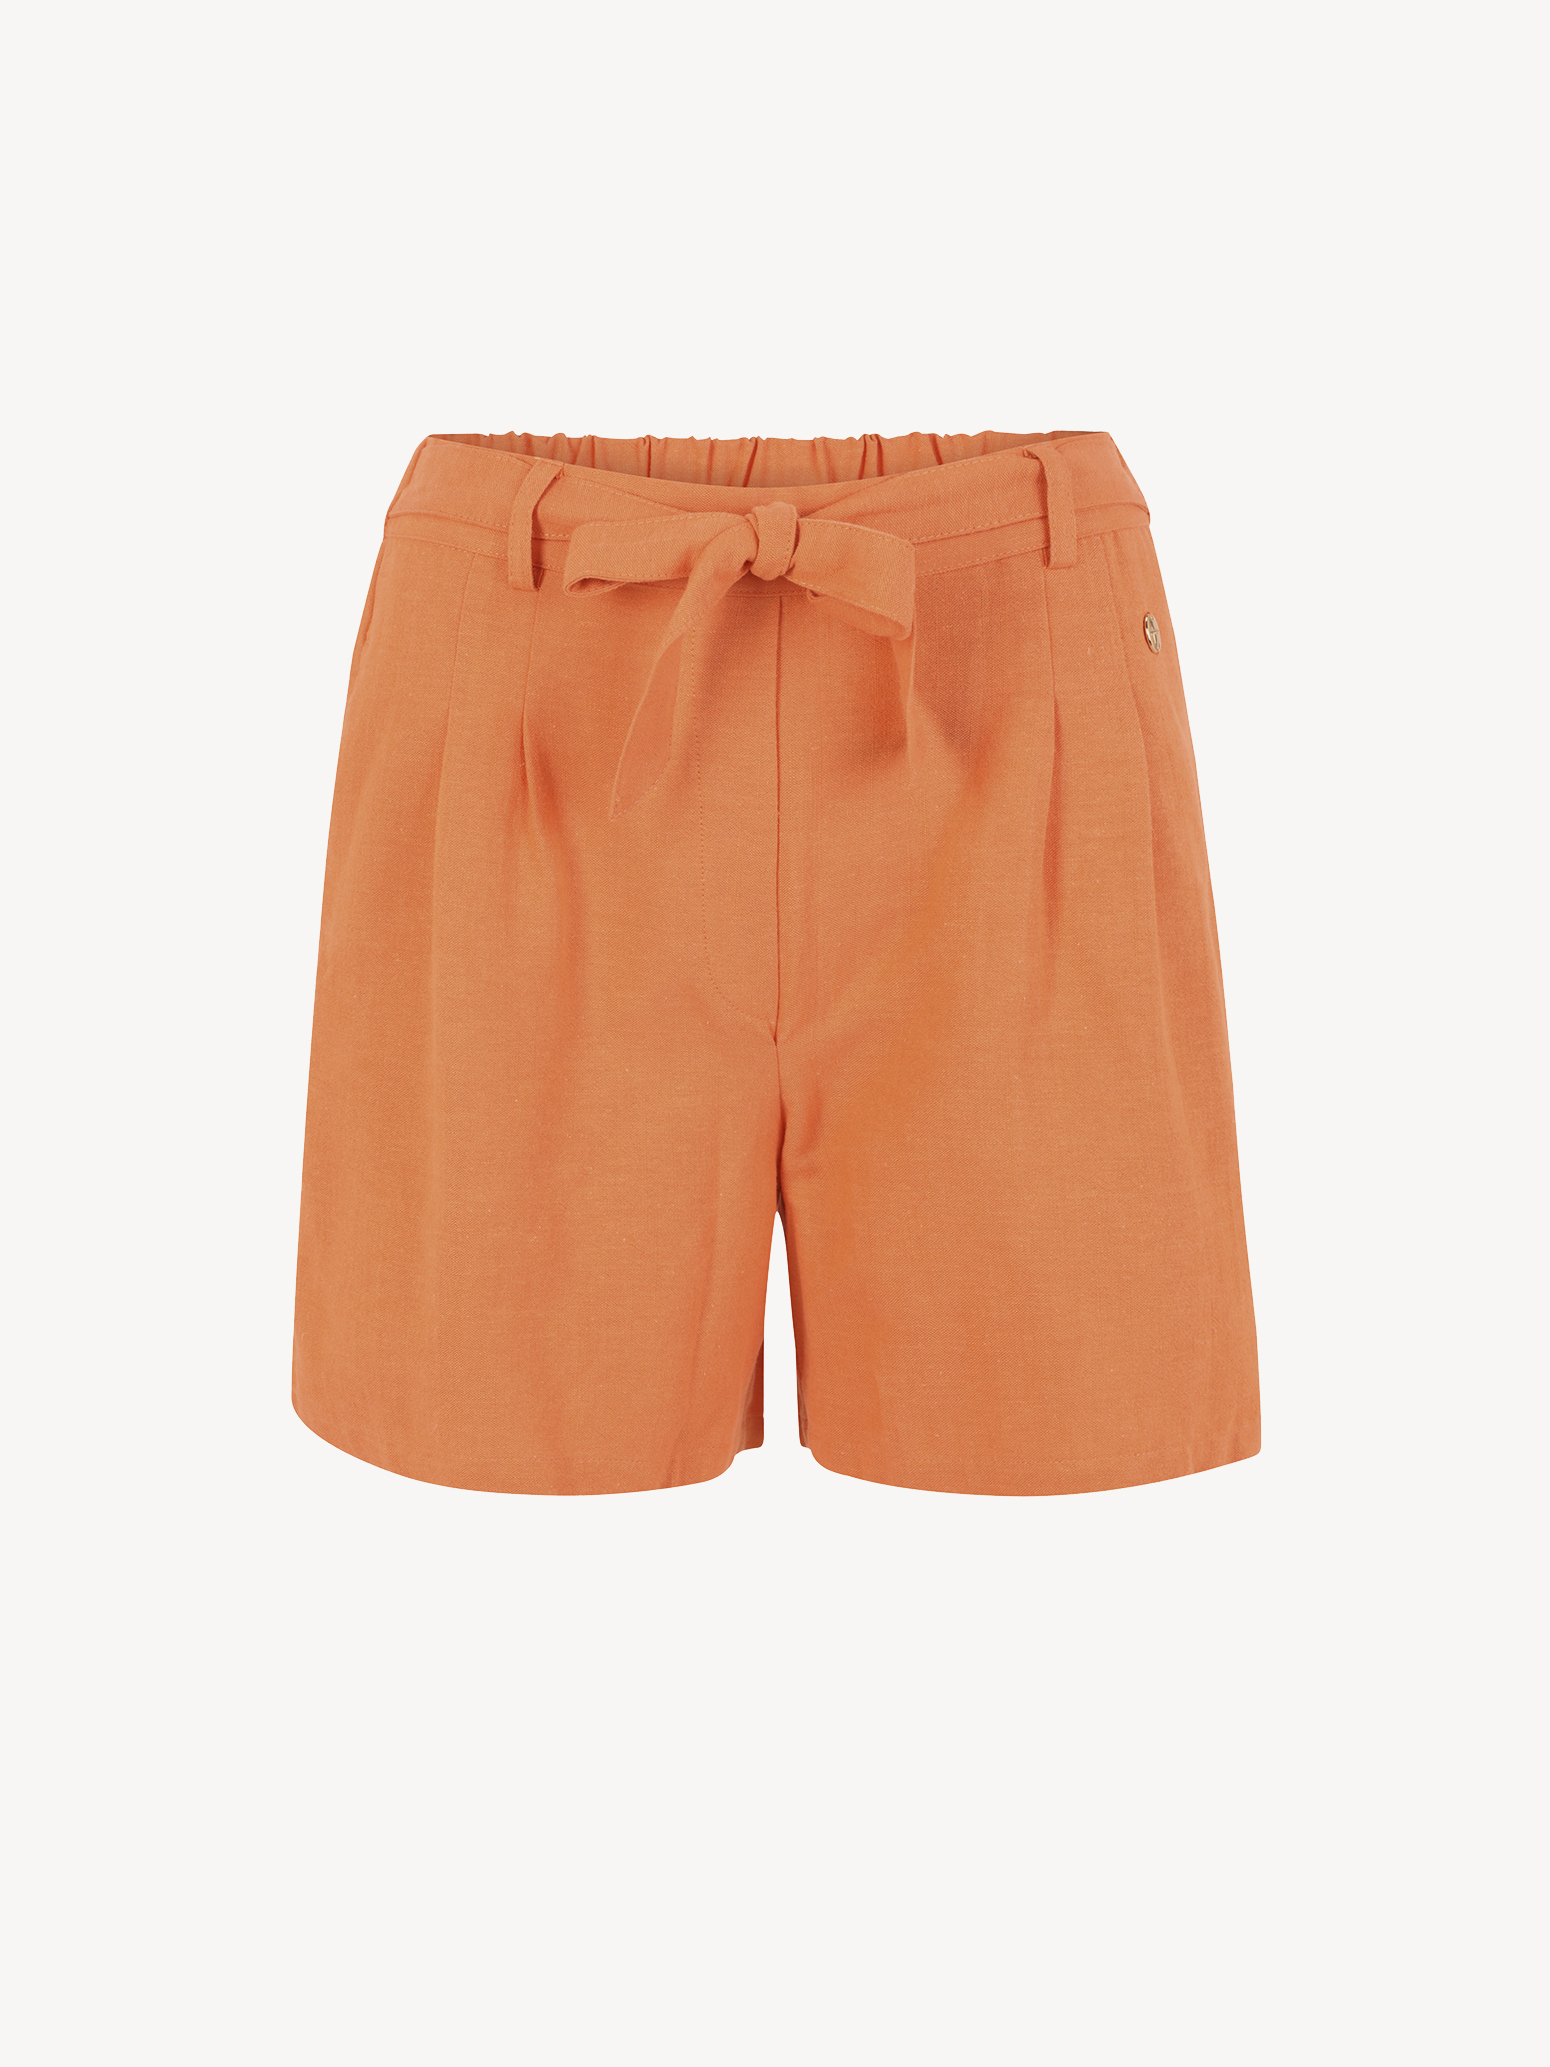 shorts orange - 46